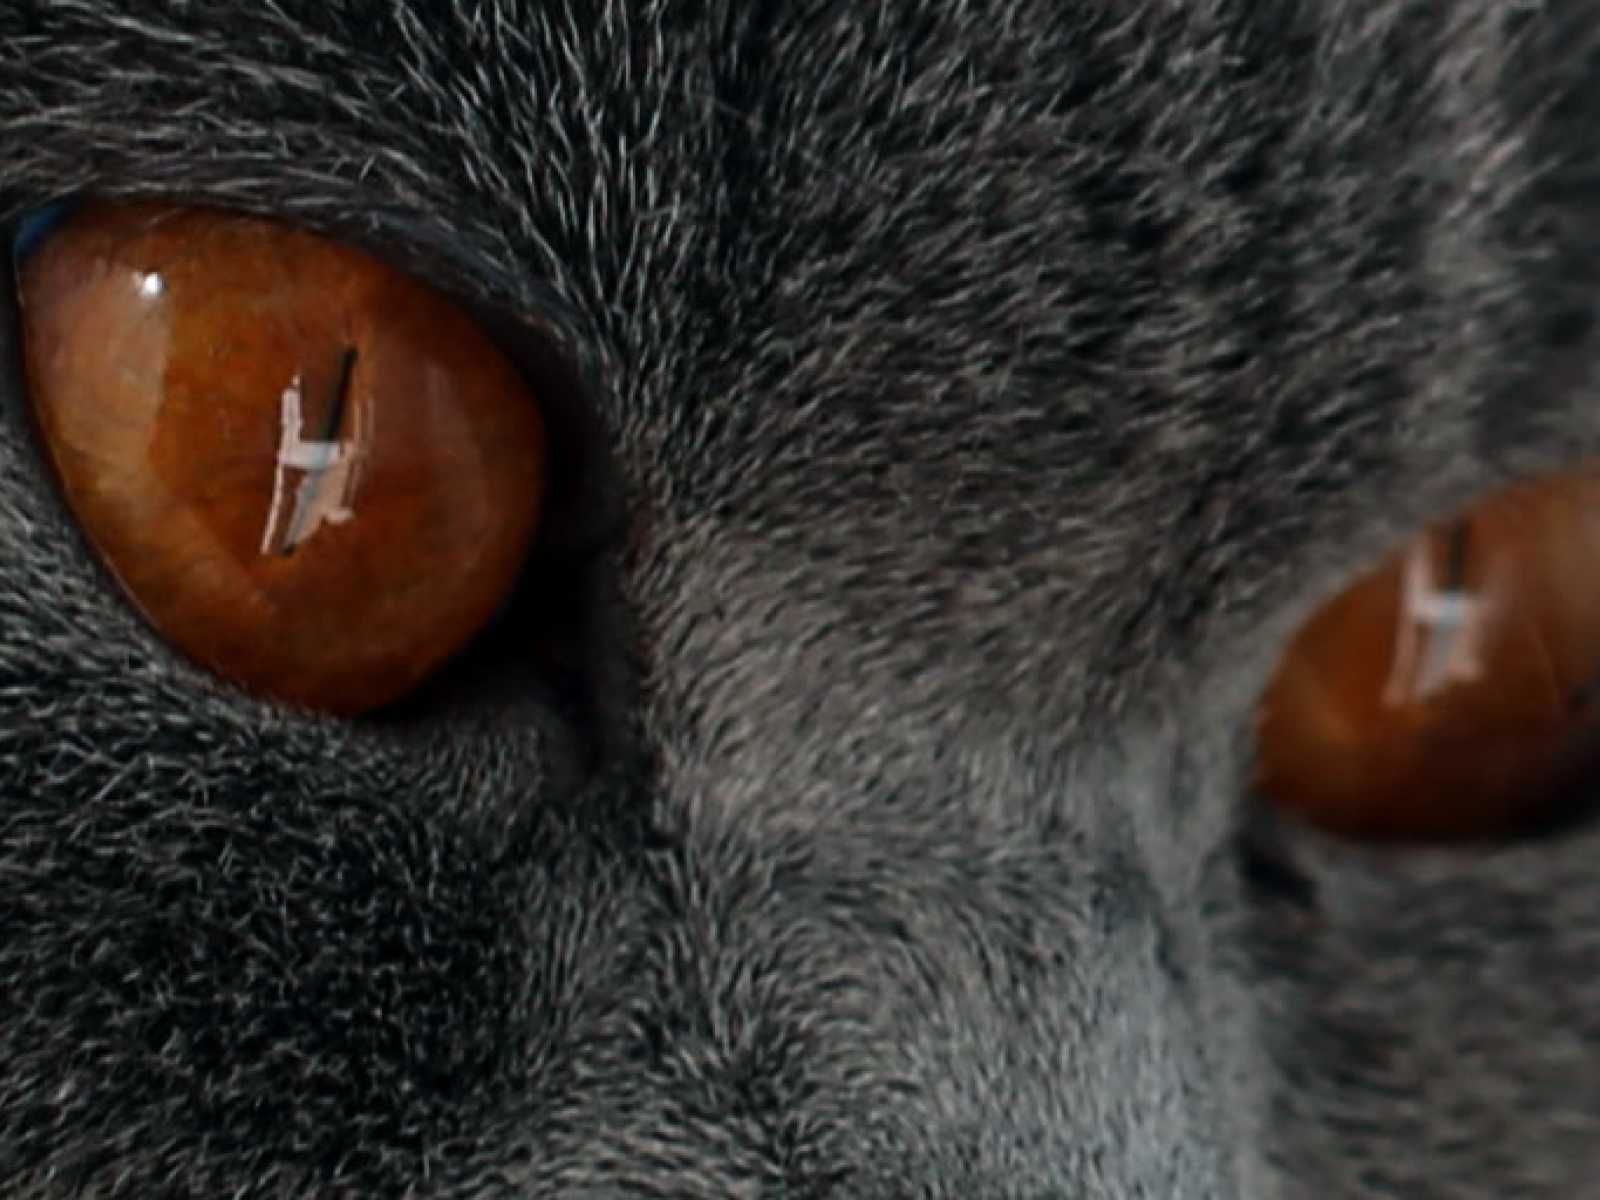 В питомнике голубая кошка с отличными глазами